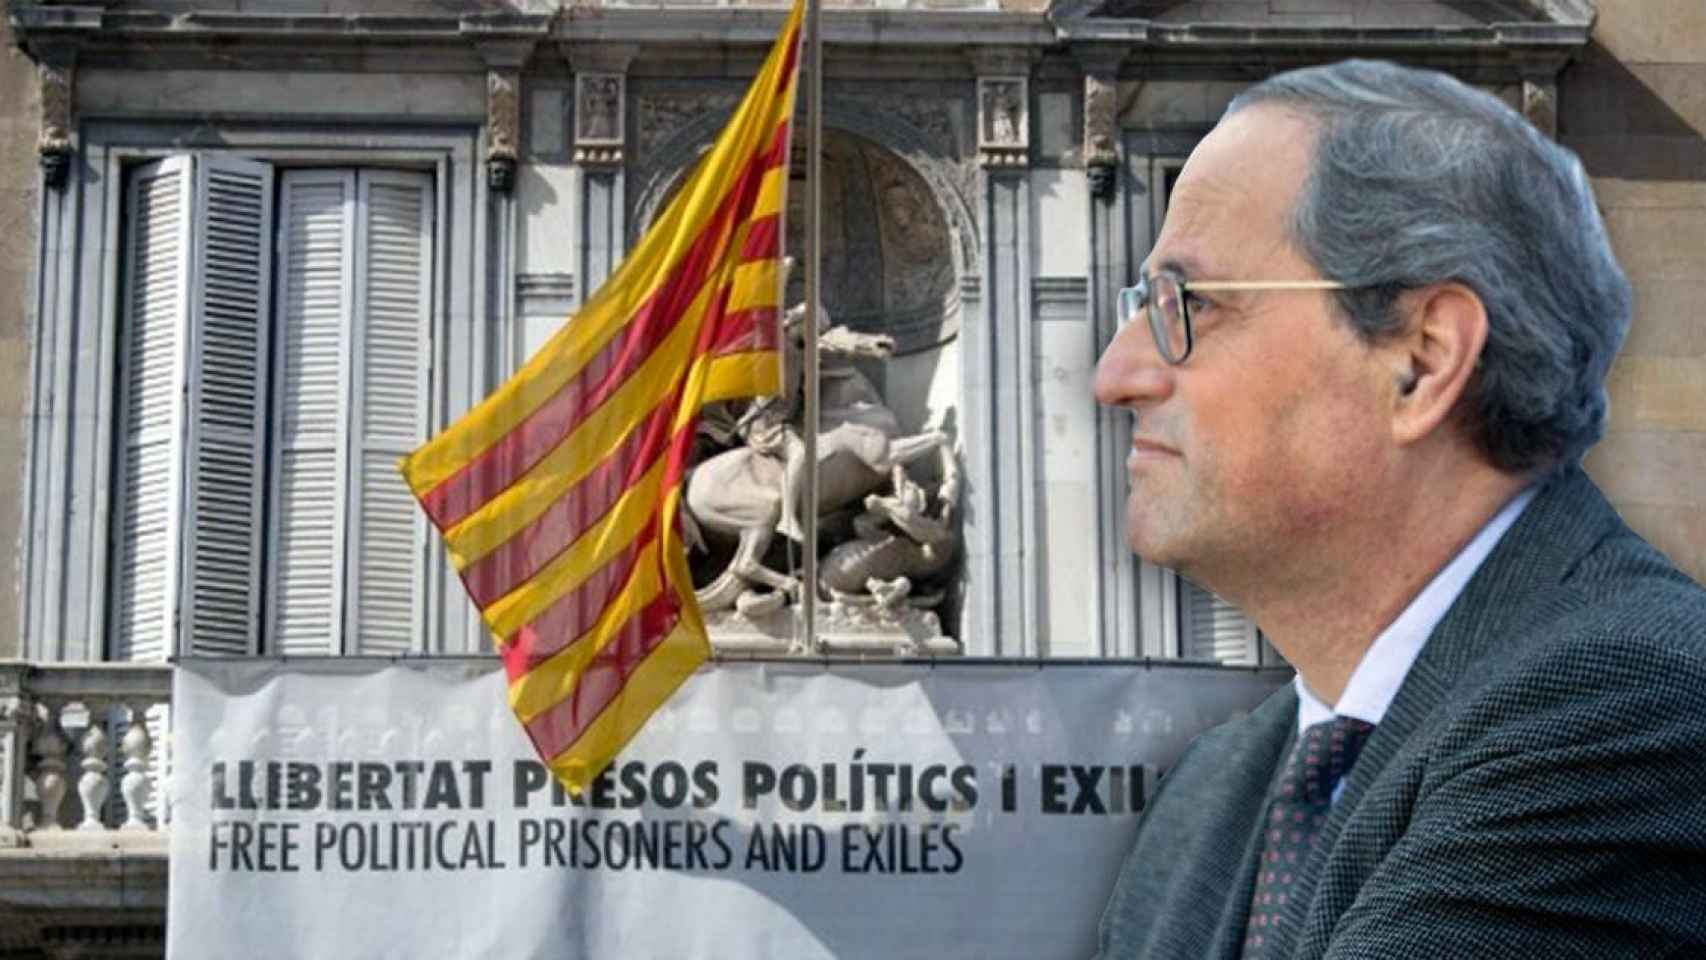 El presidente de la Generalitat, Quim Torra, con la pancarta de apoyo a los políticos presos / FOTOMONTAJE DE CG